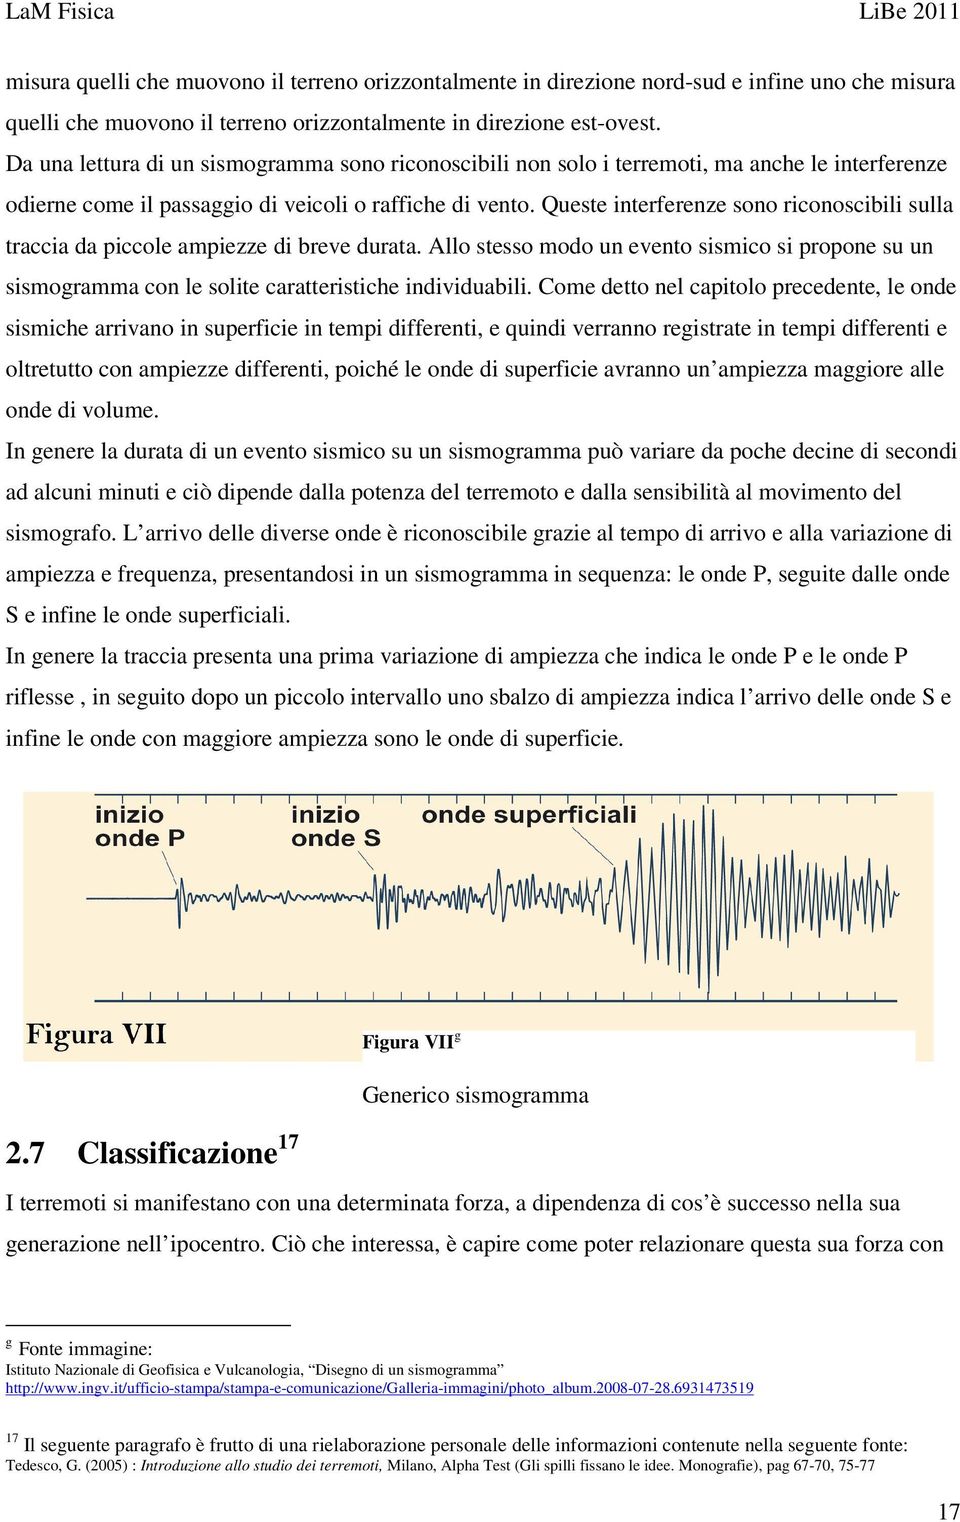 Queste interferenze sono riconoscibili sulla traccia da piccole ampiezze di breve durata. Allo stesso modo un evento sismico si propone su un sismogramma con le solite caratteristiche individuabili.